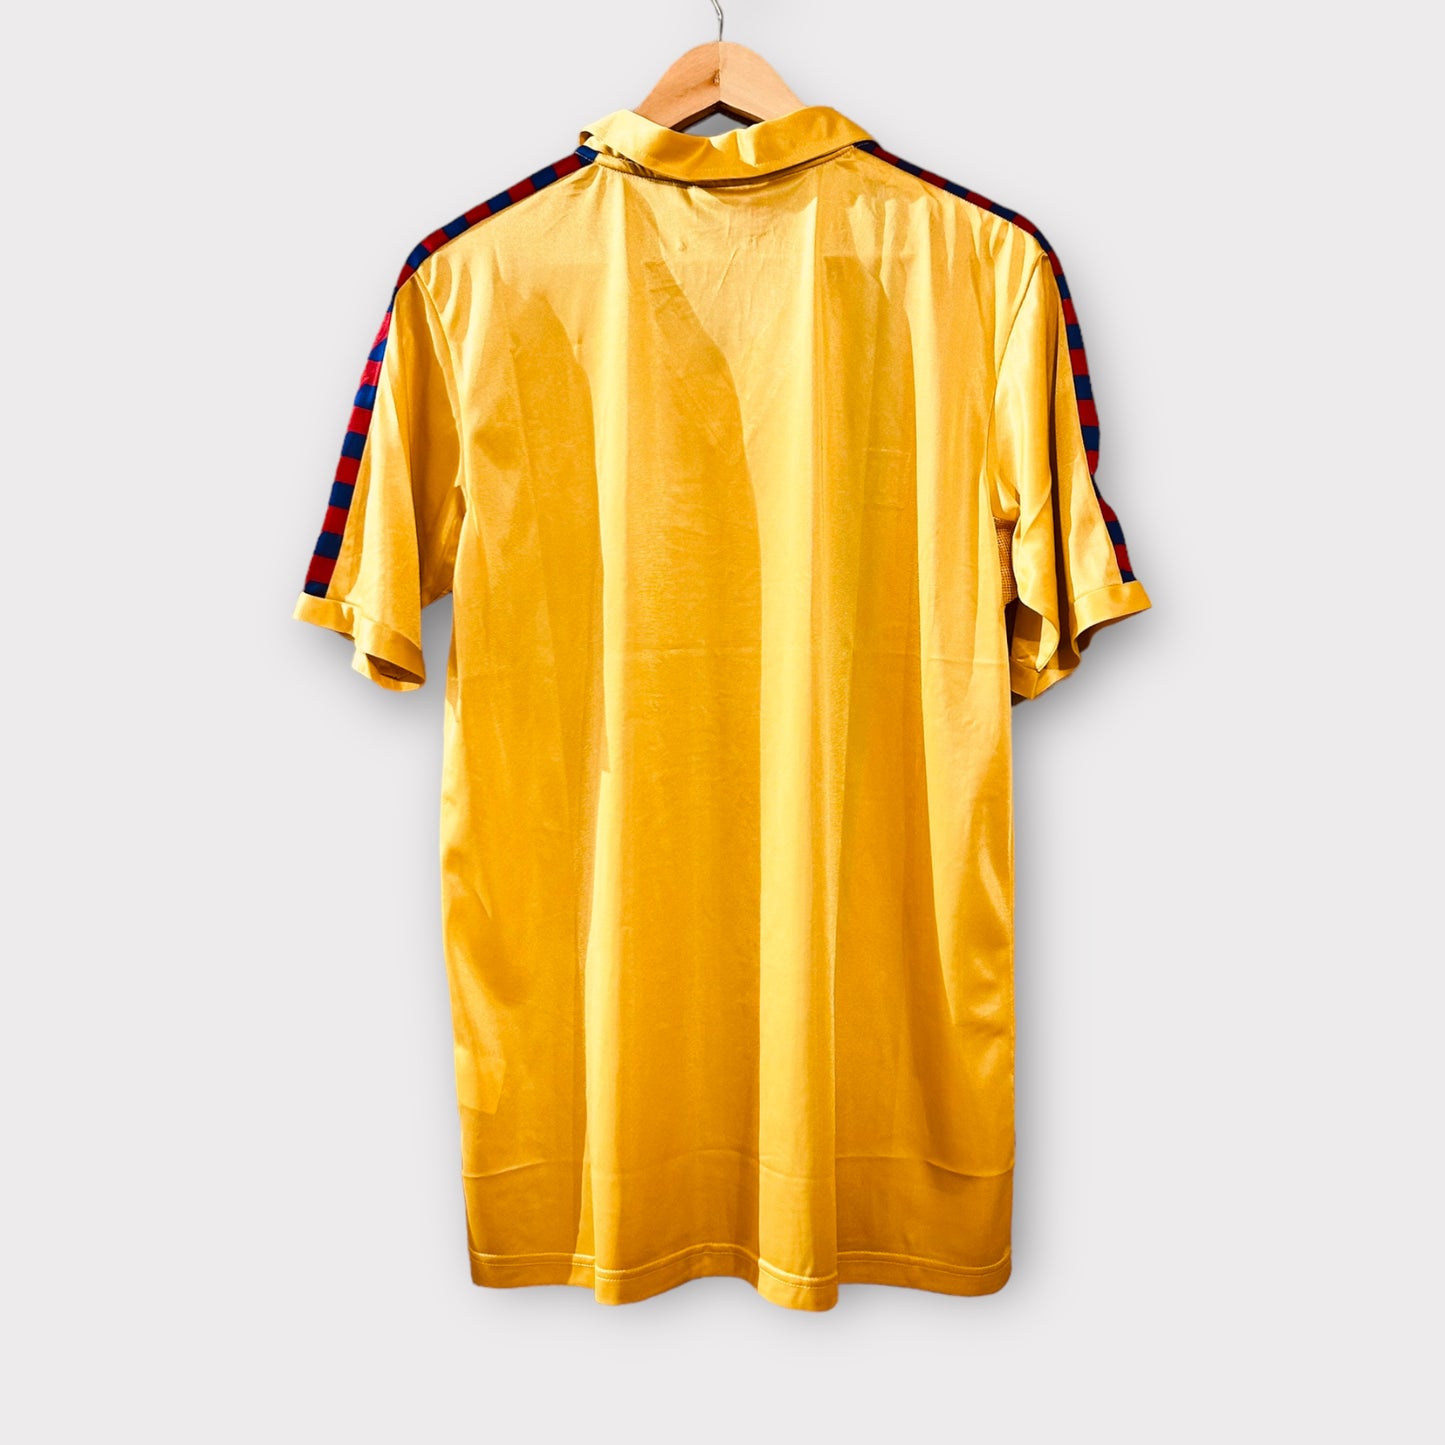 Blaugrana (Barca) 1981-85 Away Shirt (Various Sizes)